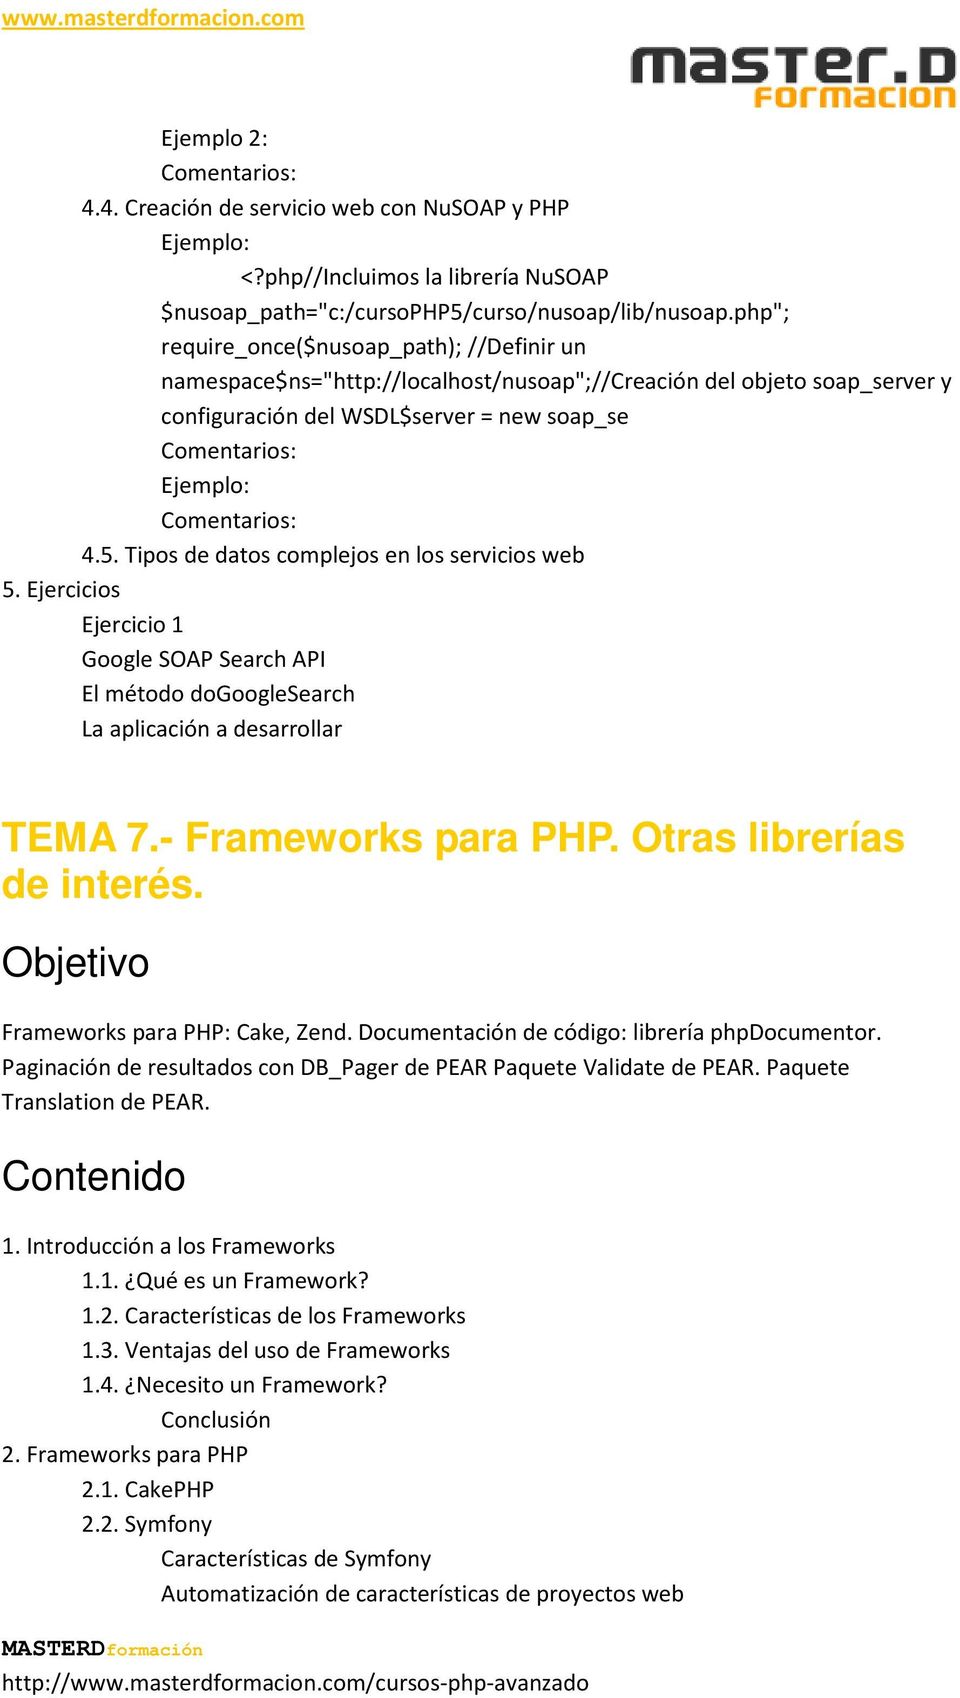 Tipos de datos complejos en los servicios web 5. Ejercicios Google SOAP Search API El método dogooglesearch La aplicación a desarrollar TEMA 7.- Frameworks para PHP. Otras librerías de interés.